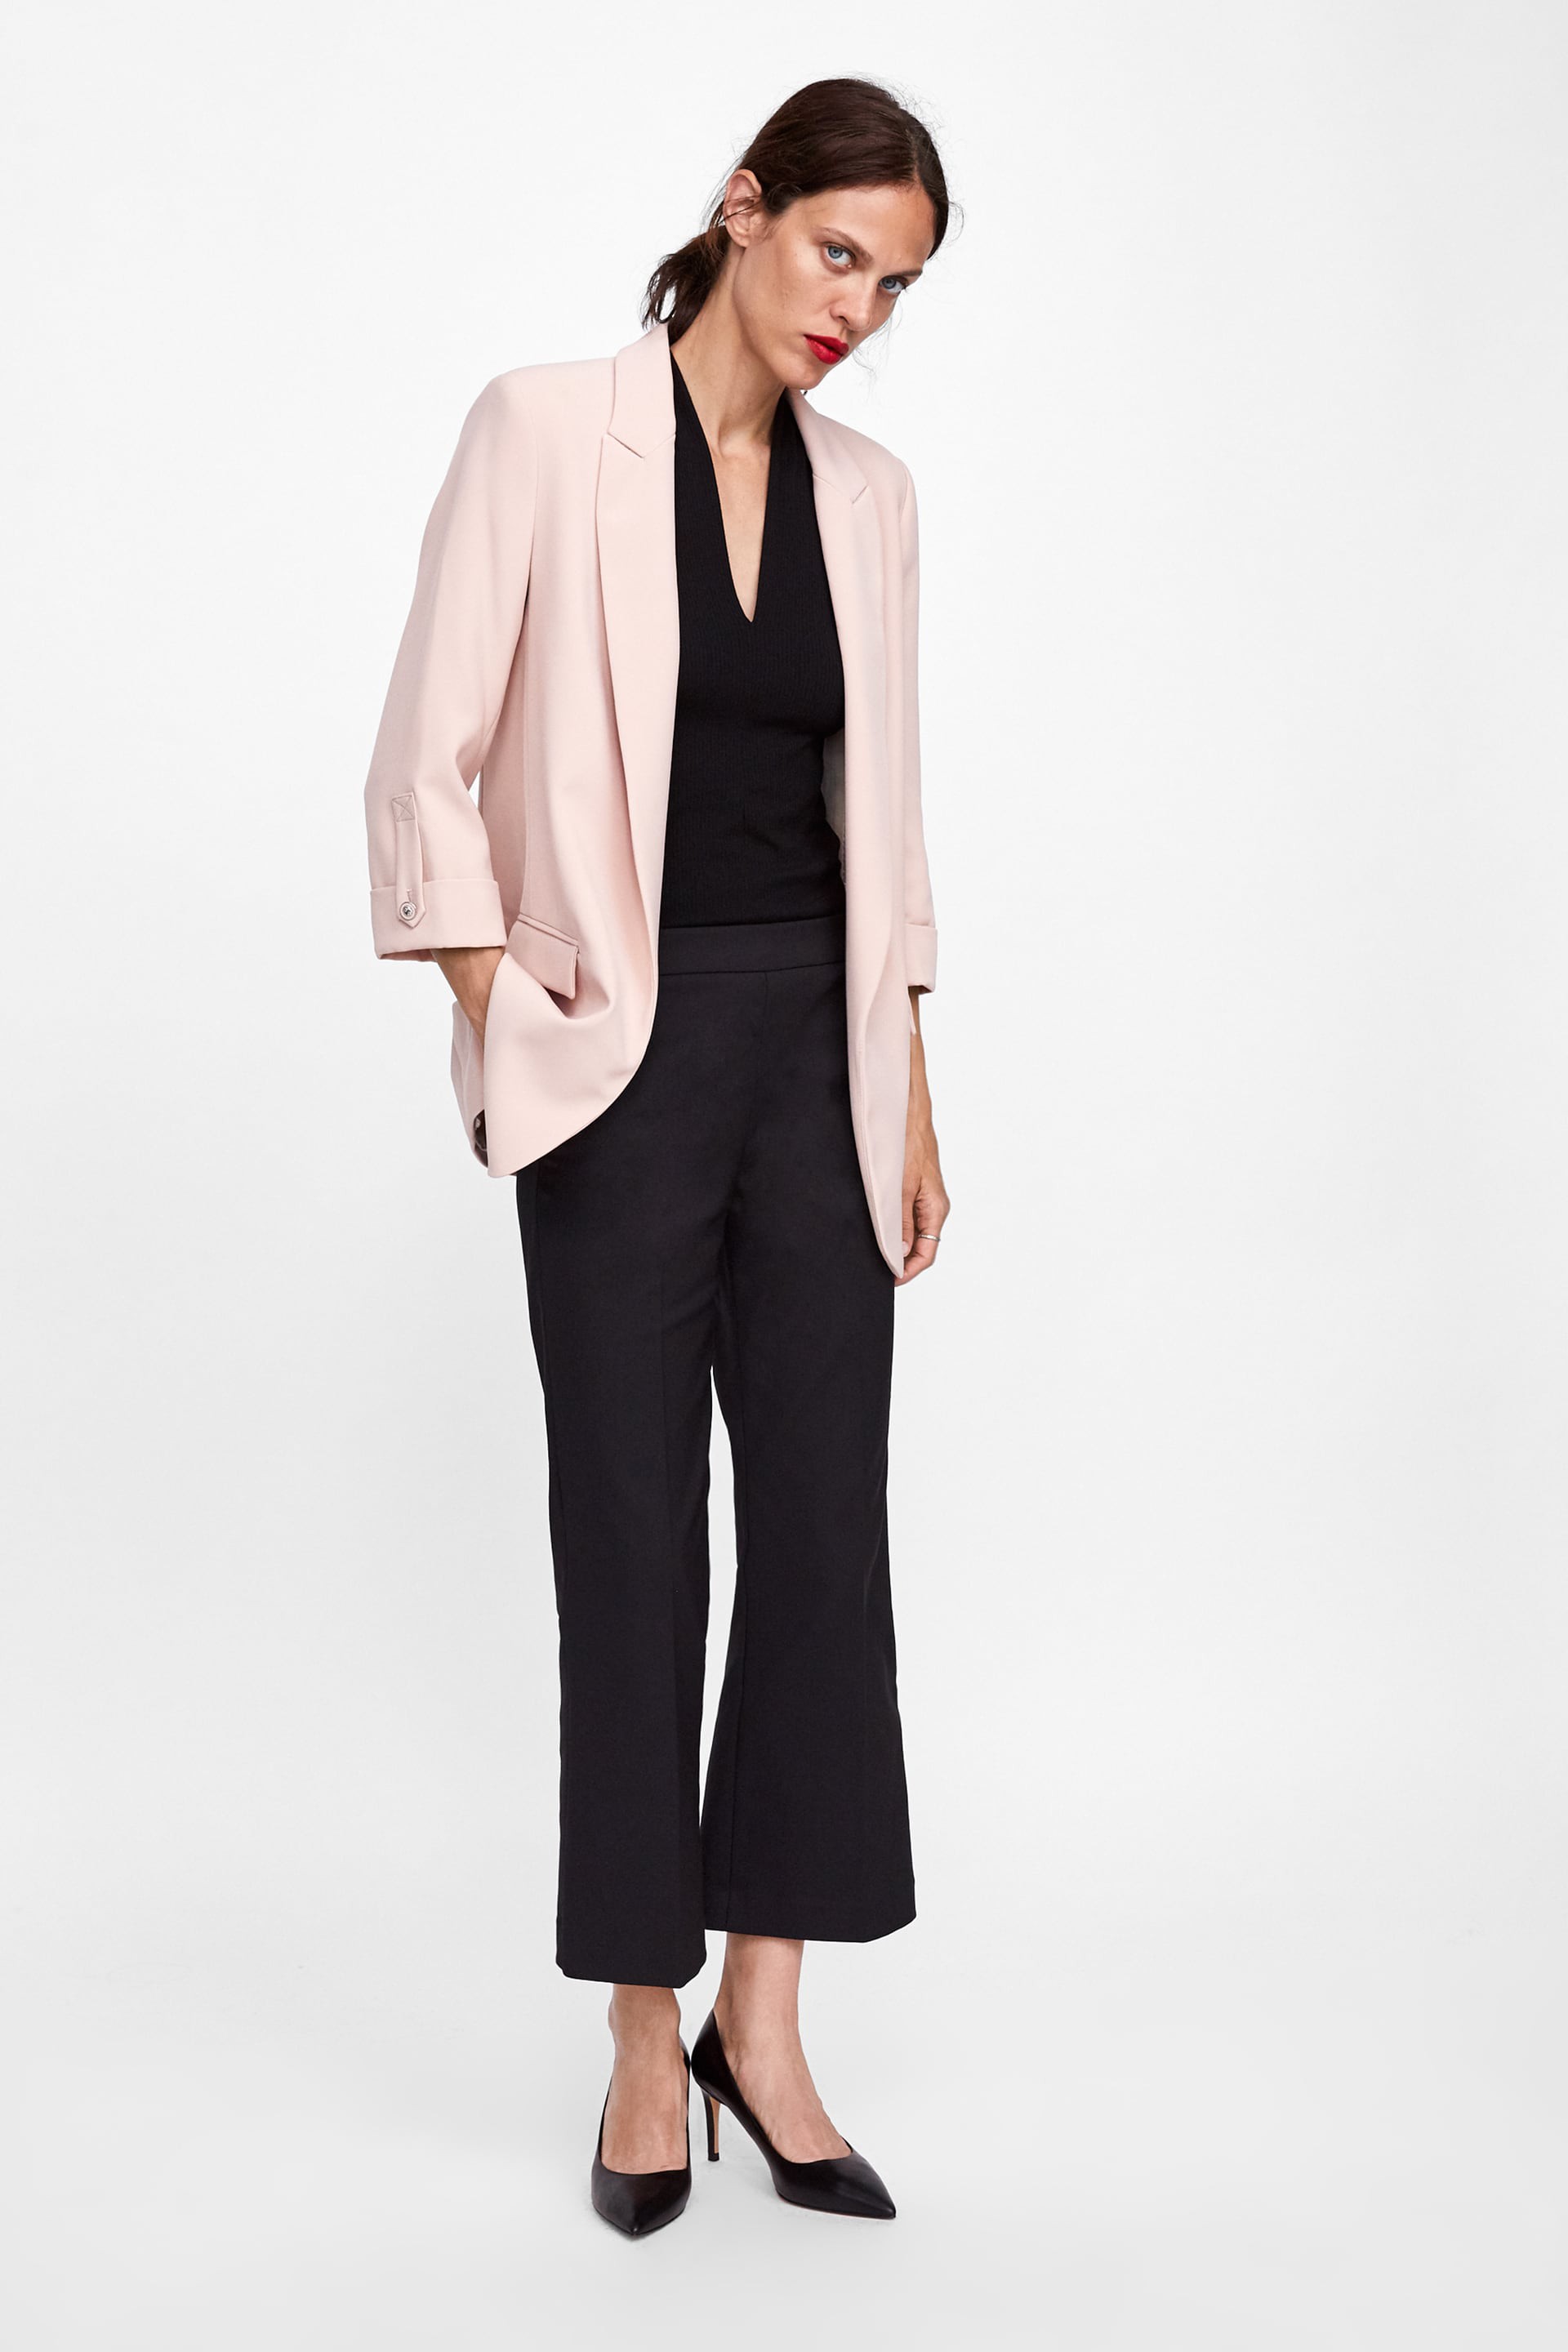 15 mẫu áo blazer của Zara, H&M... thanh lịch mà cực kỳ cá tính dành cho nàng công sở khi thời tiết đang chuyển từ hè sang thu - Ảnh 3.